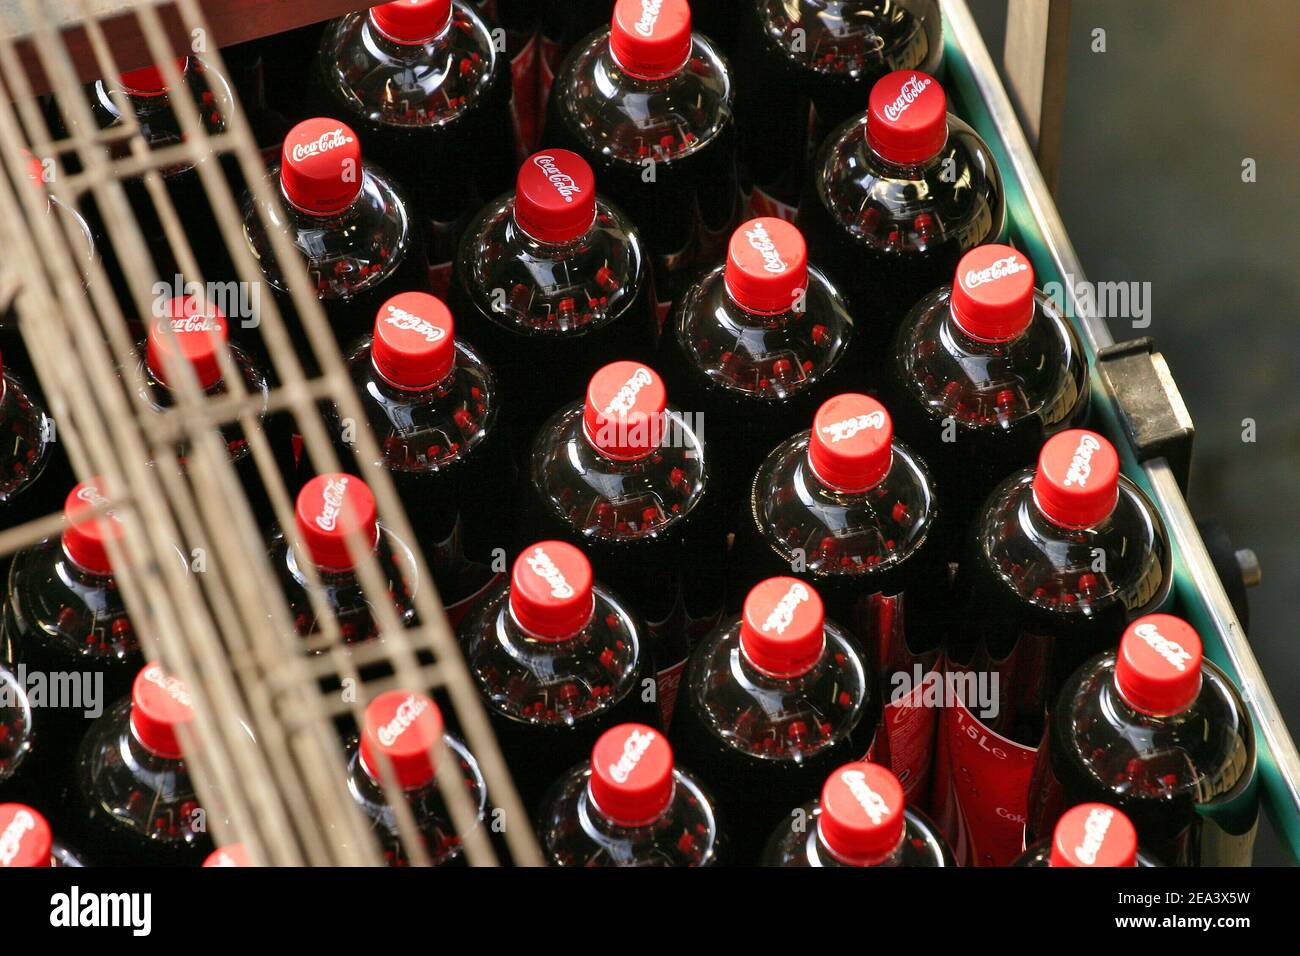 Allgemeine Ansichten der Coca-Cola-Fabrik 'les Pennes Mirabeau' in der Nähe  von Marseille, Frankreich am 21. April 2005, der Abfüllkette, dem Labor und  den Reserven von Coca-Cola-Sirup. Foto von Gerald Holubowicz/ABACA  Stockfotografie 